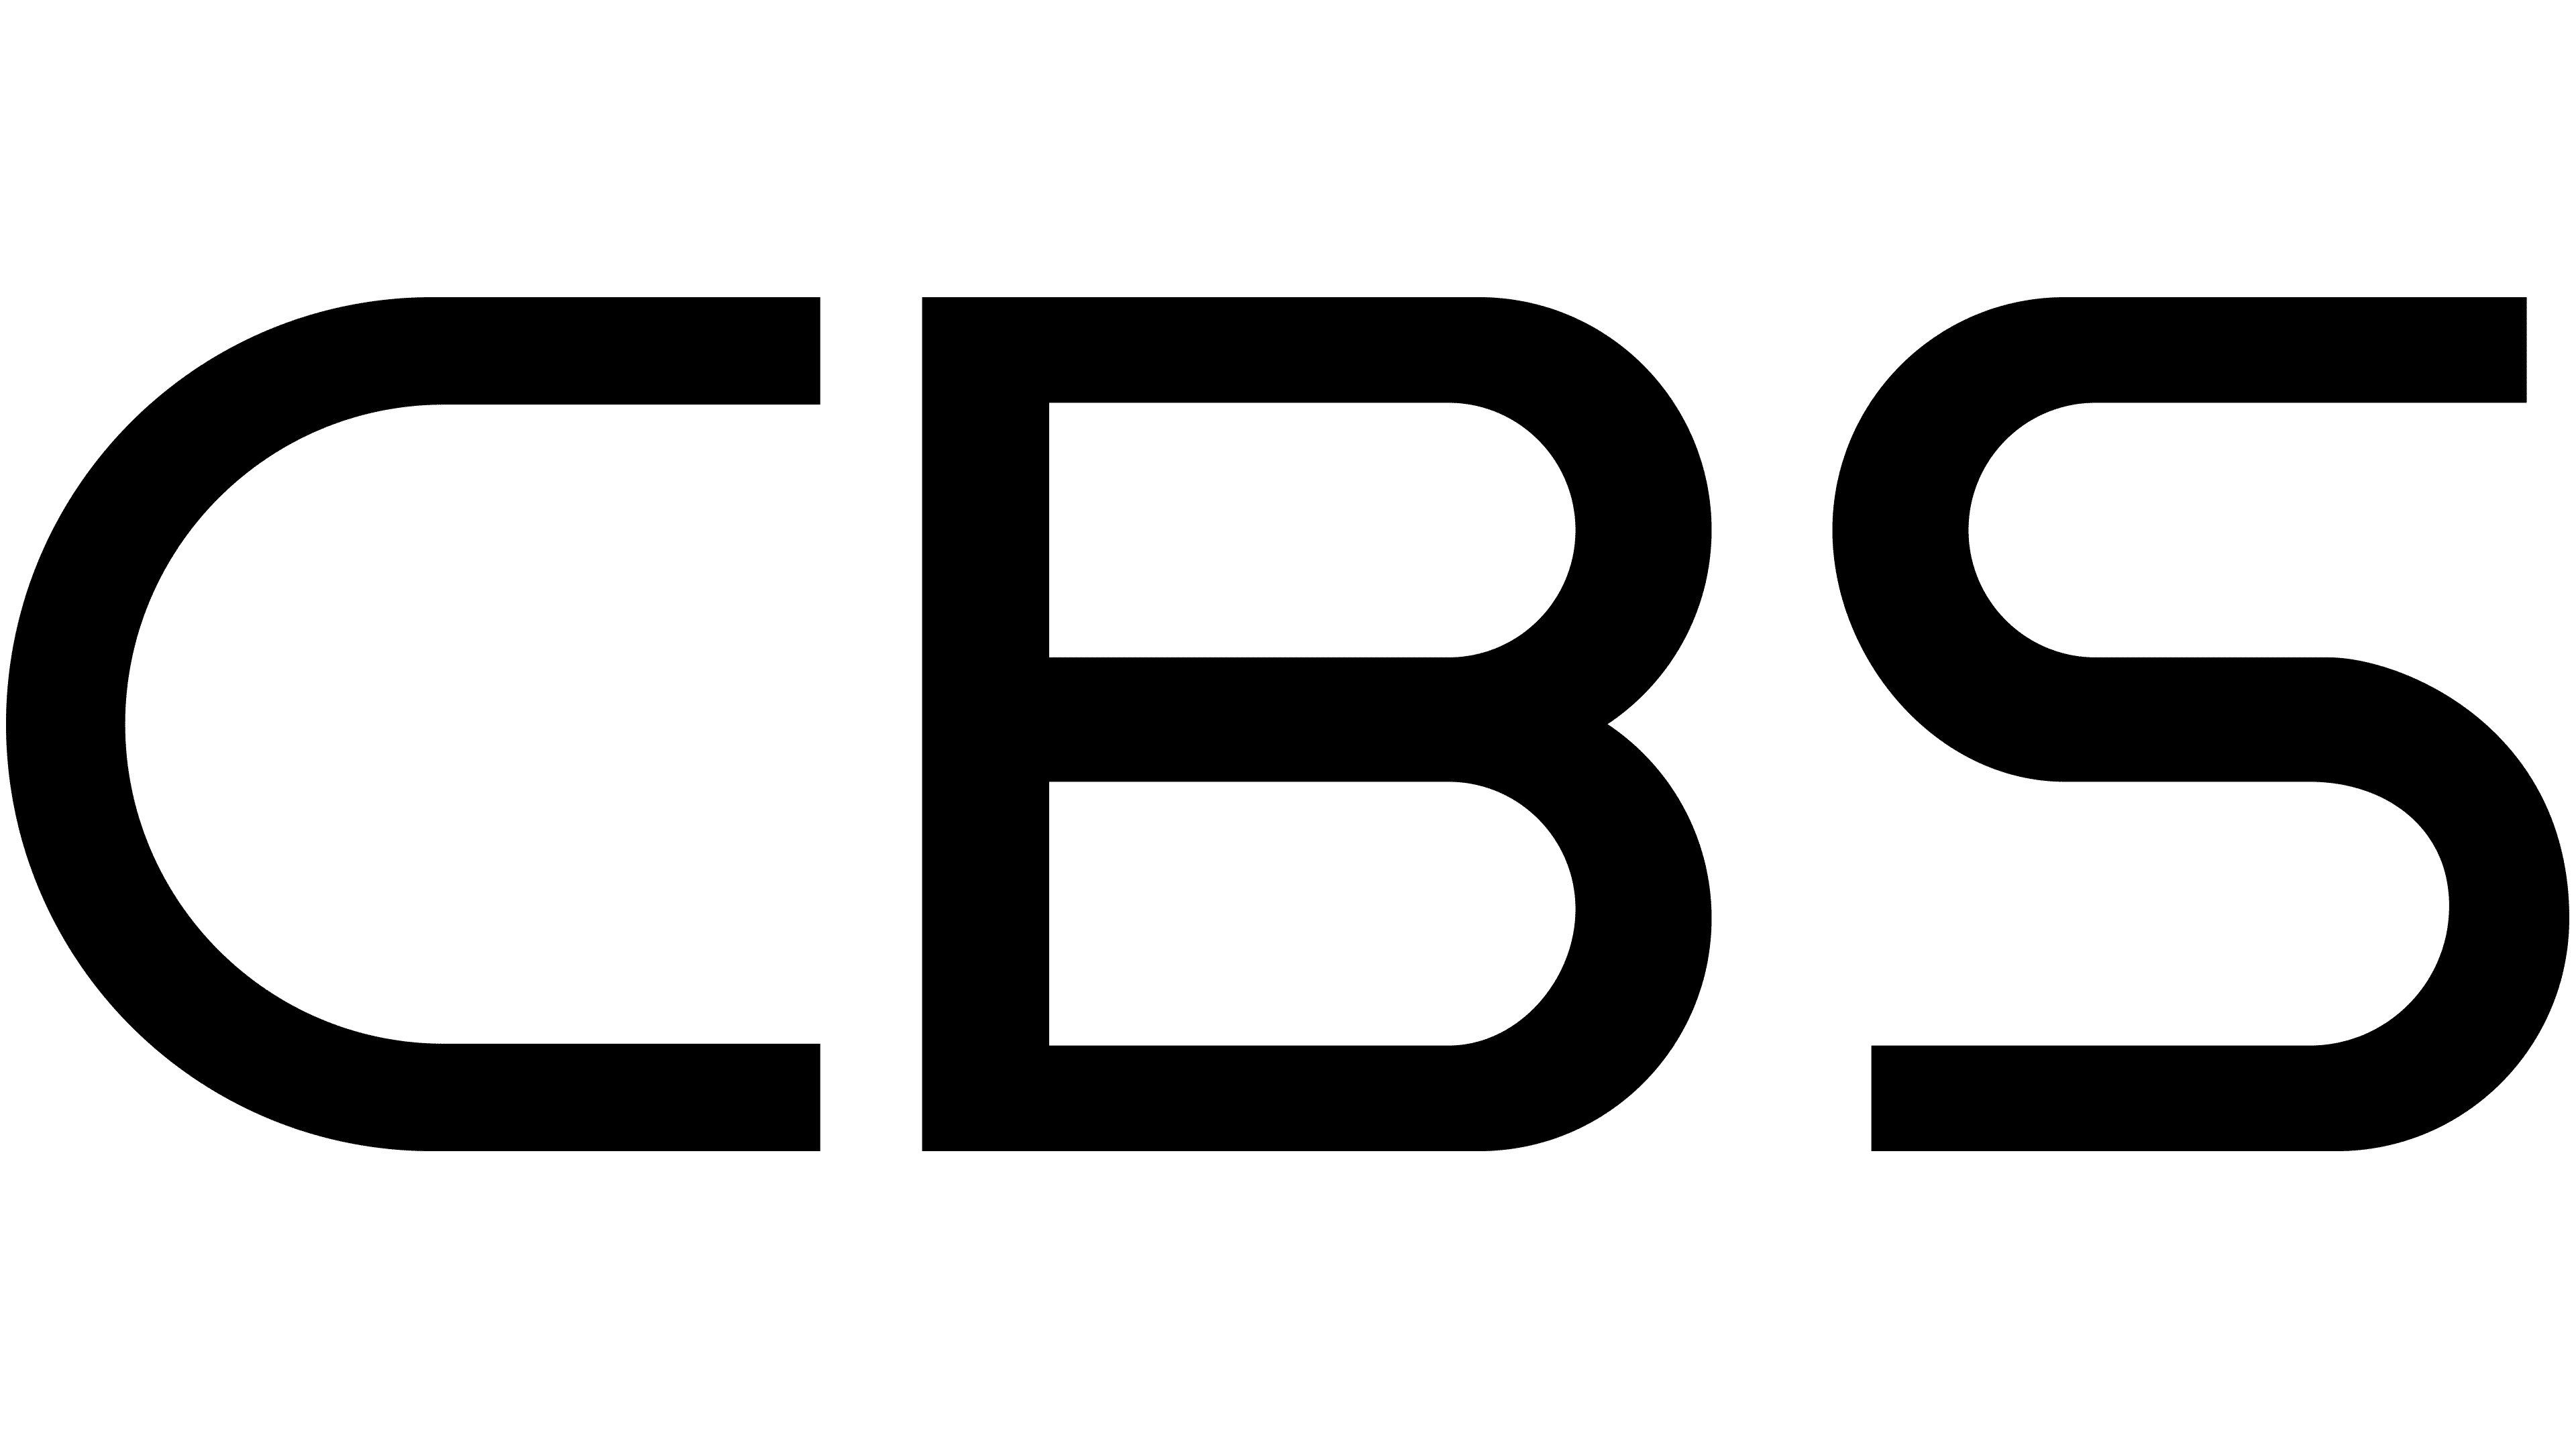 Cbs Logo PNG File